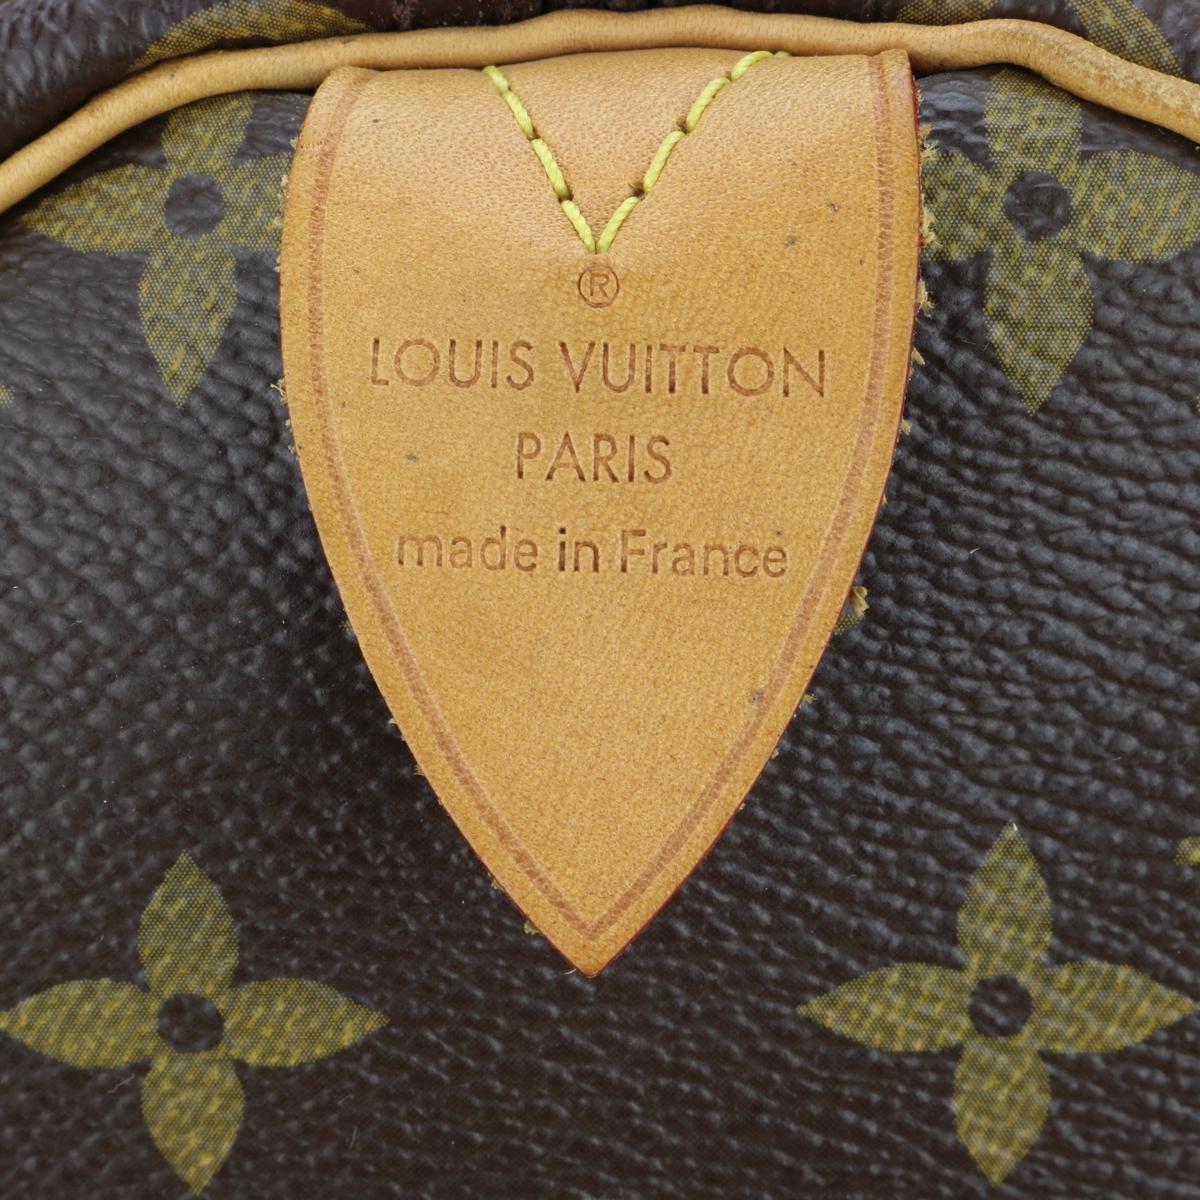 Louis Vuitton Speedy 30 in Monogram 2015 1